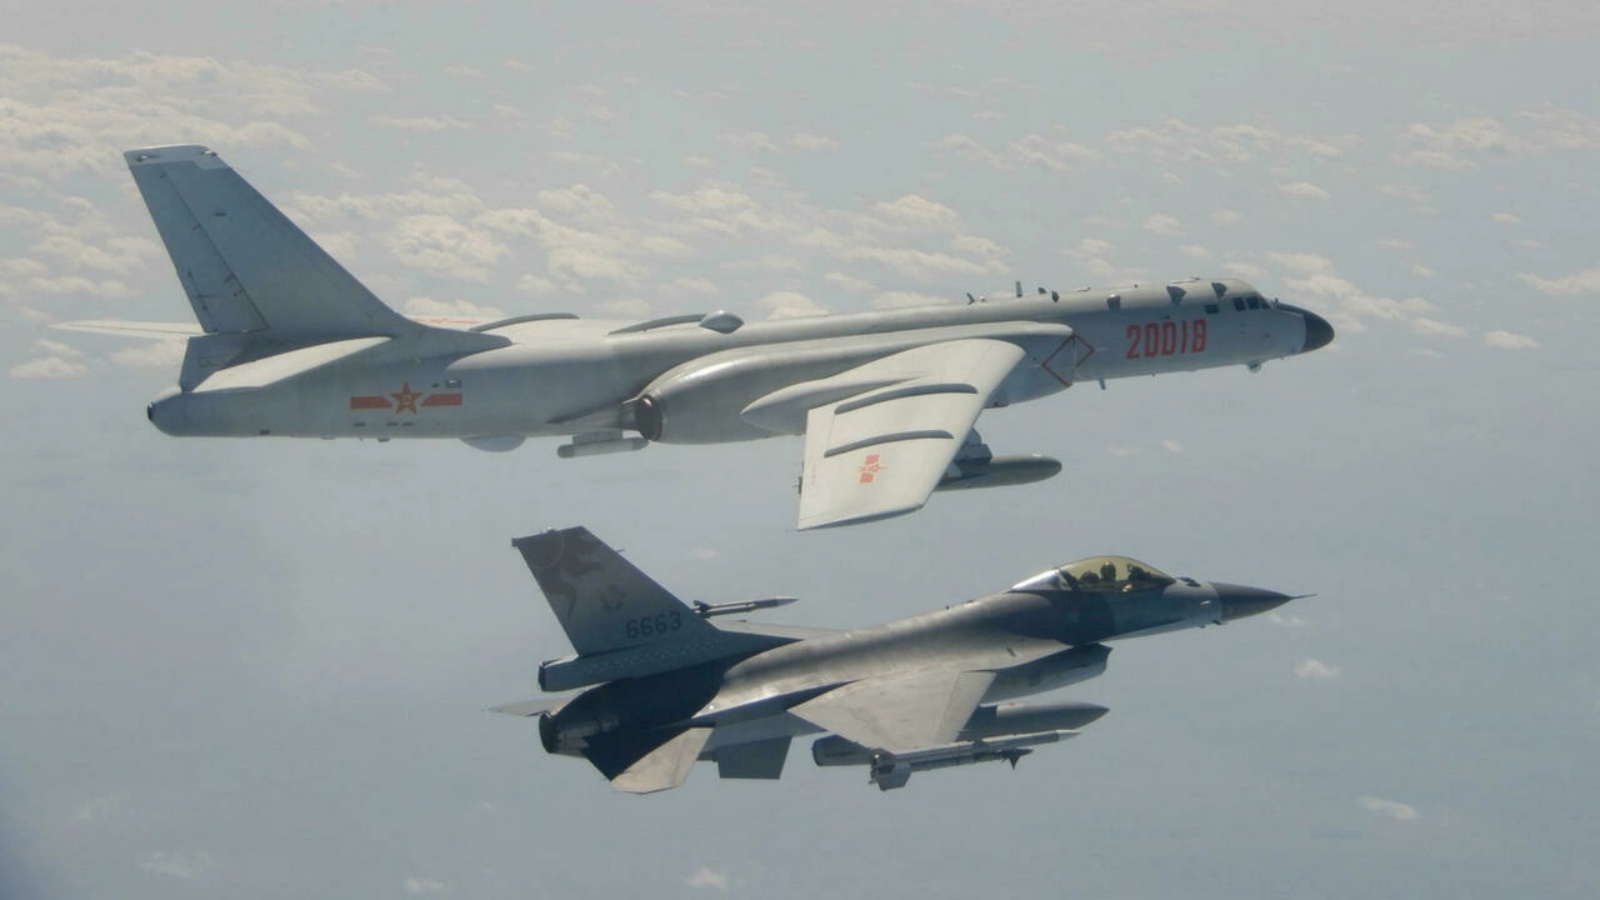 طائرة مقاتلة تايوانية من طراز F-16 تحلق بجوار قاذفة صينية من طراز H-6 (أعلى) في المجال الجوي لتايوان (توضيحية)